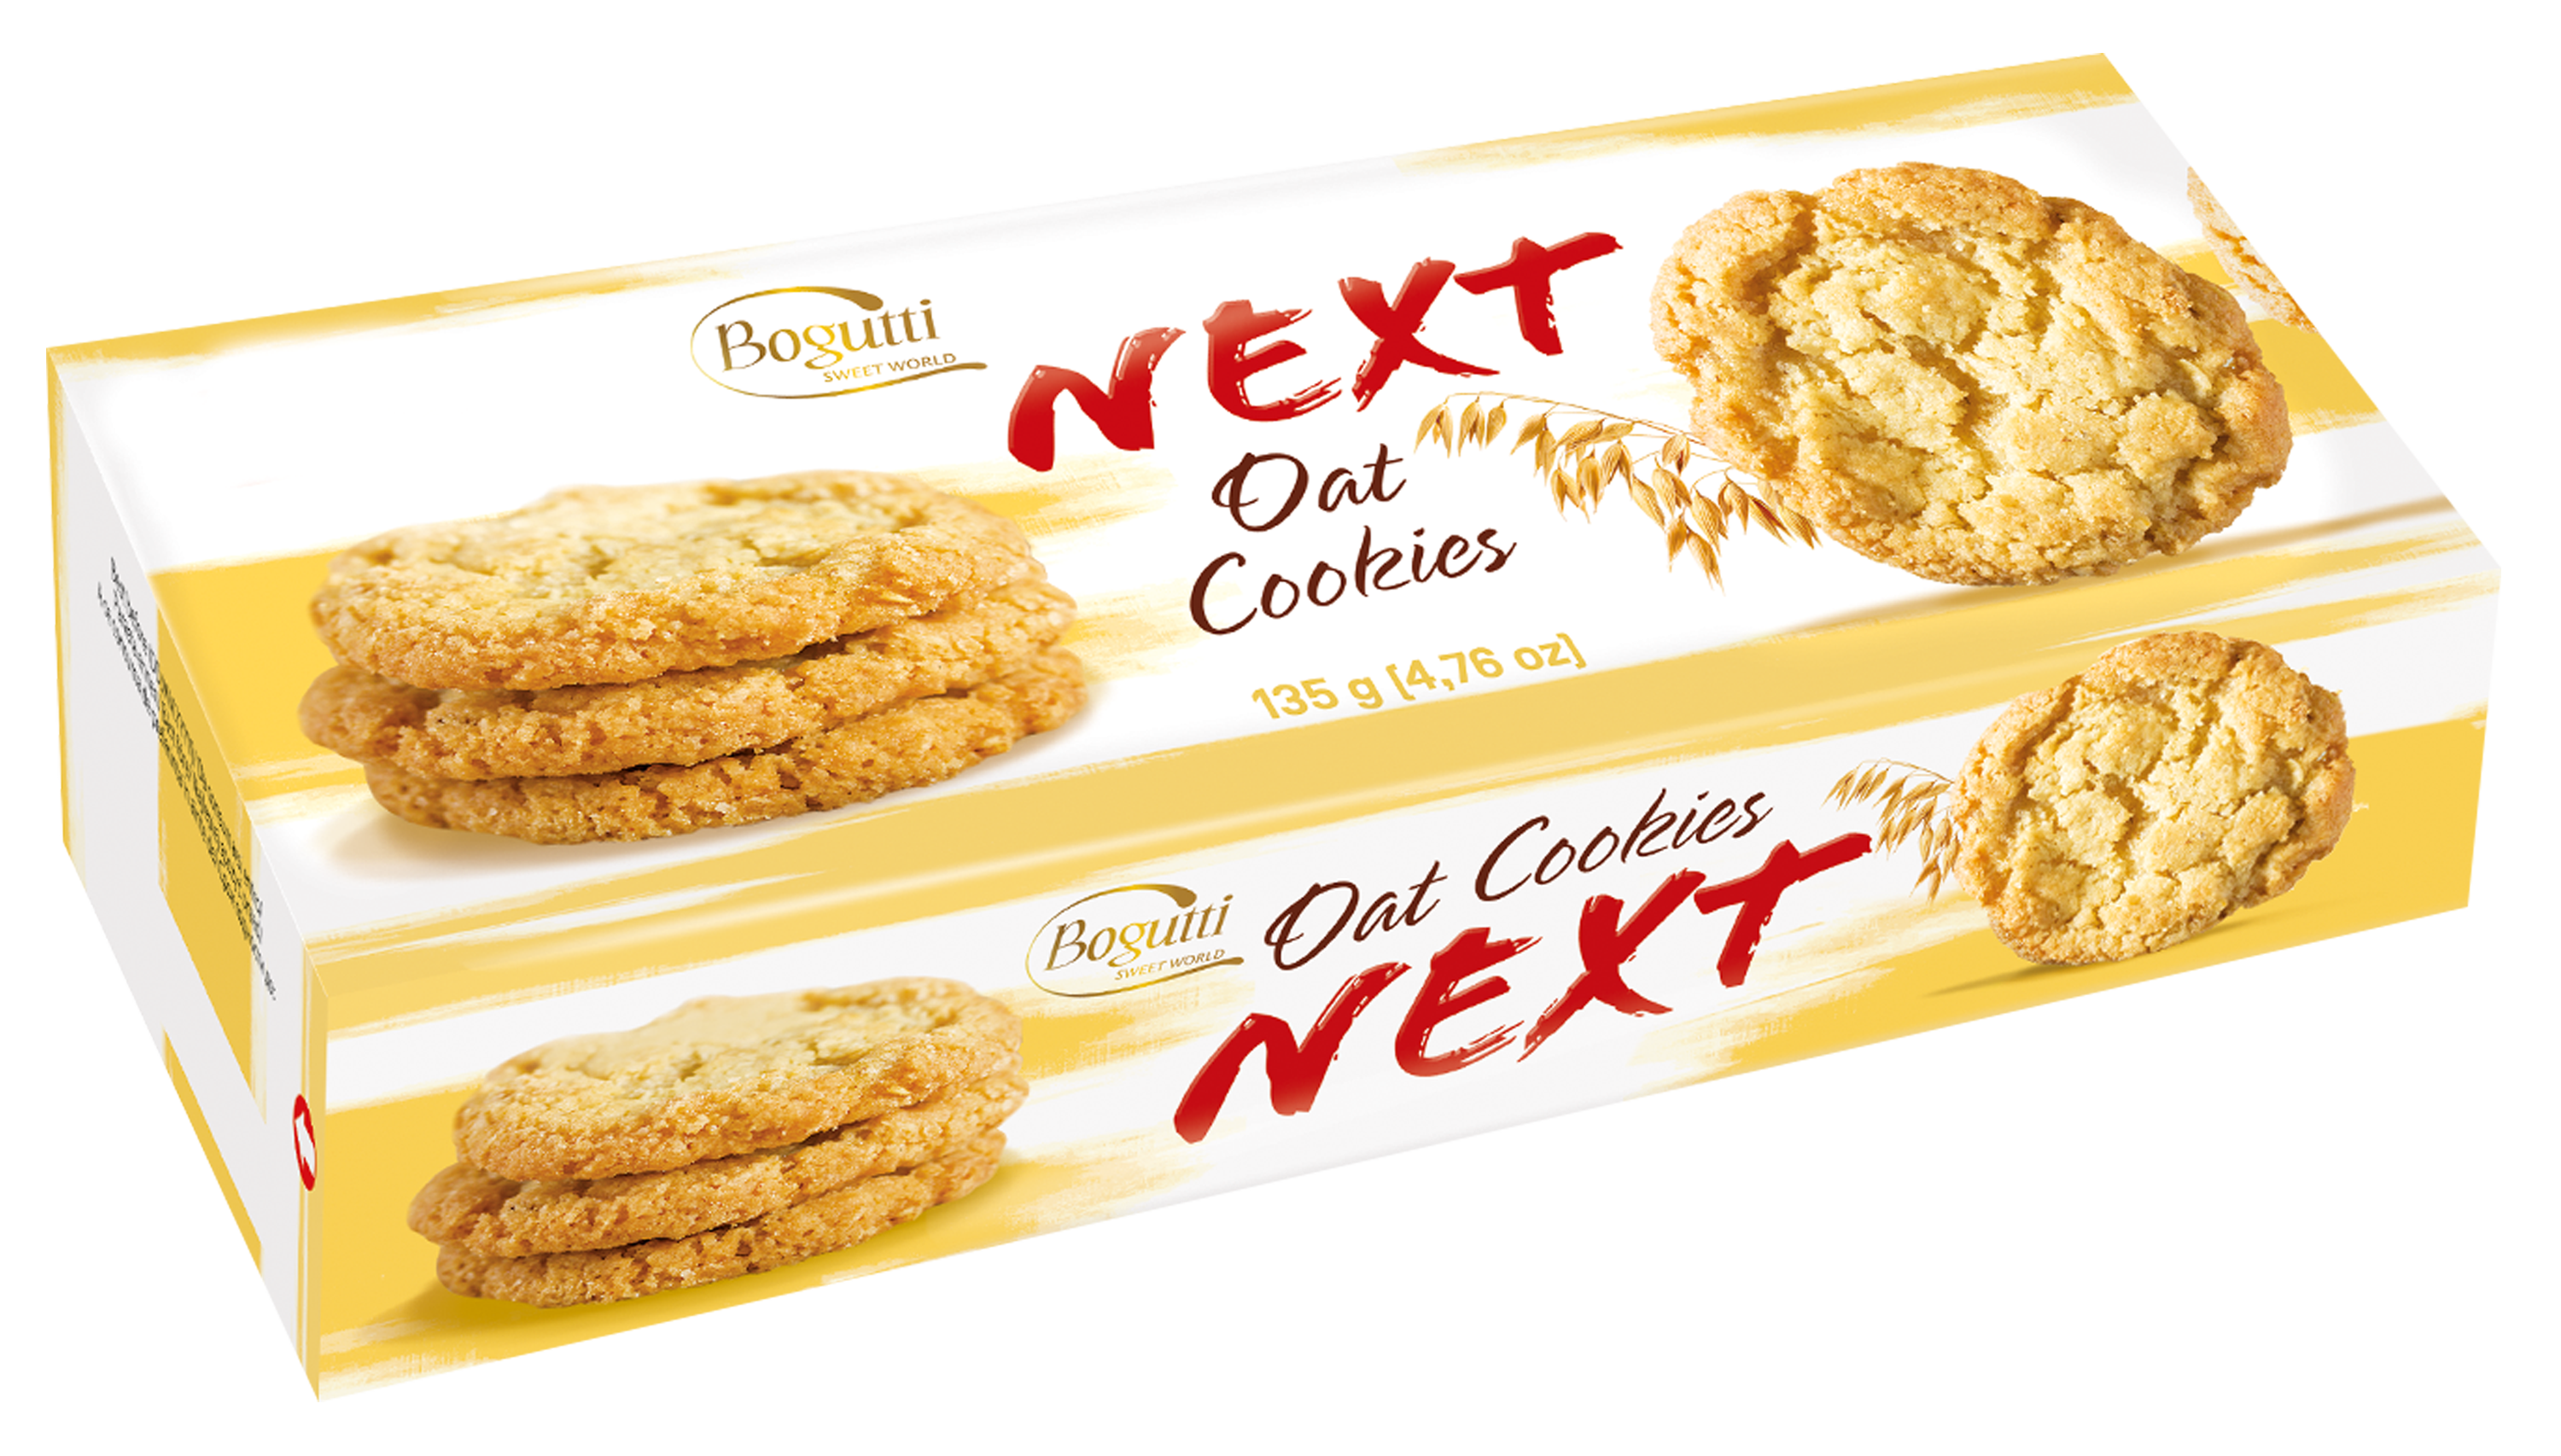 NEXT – Crunchy oat cookies